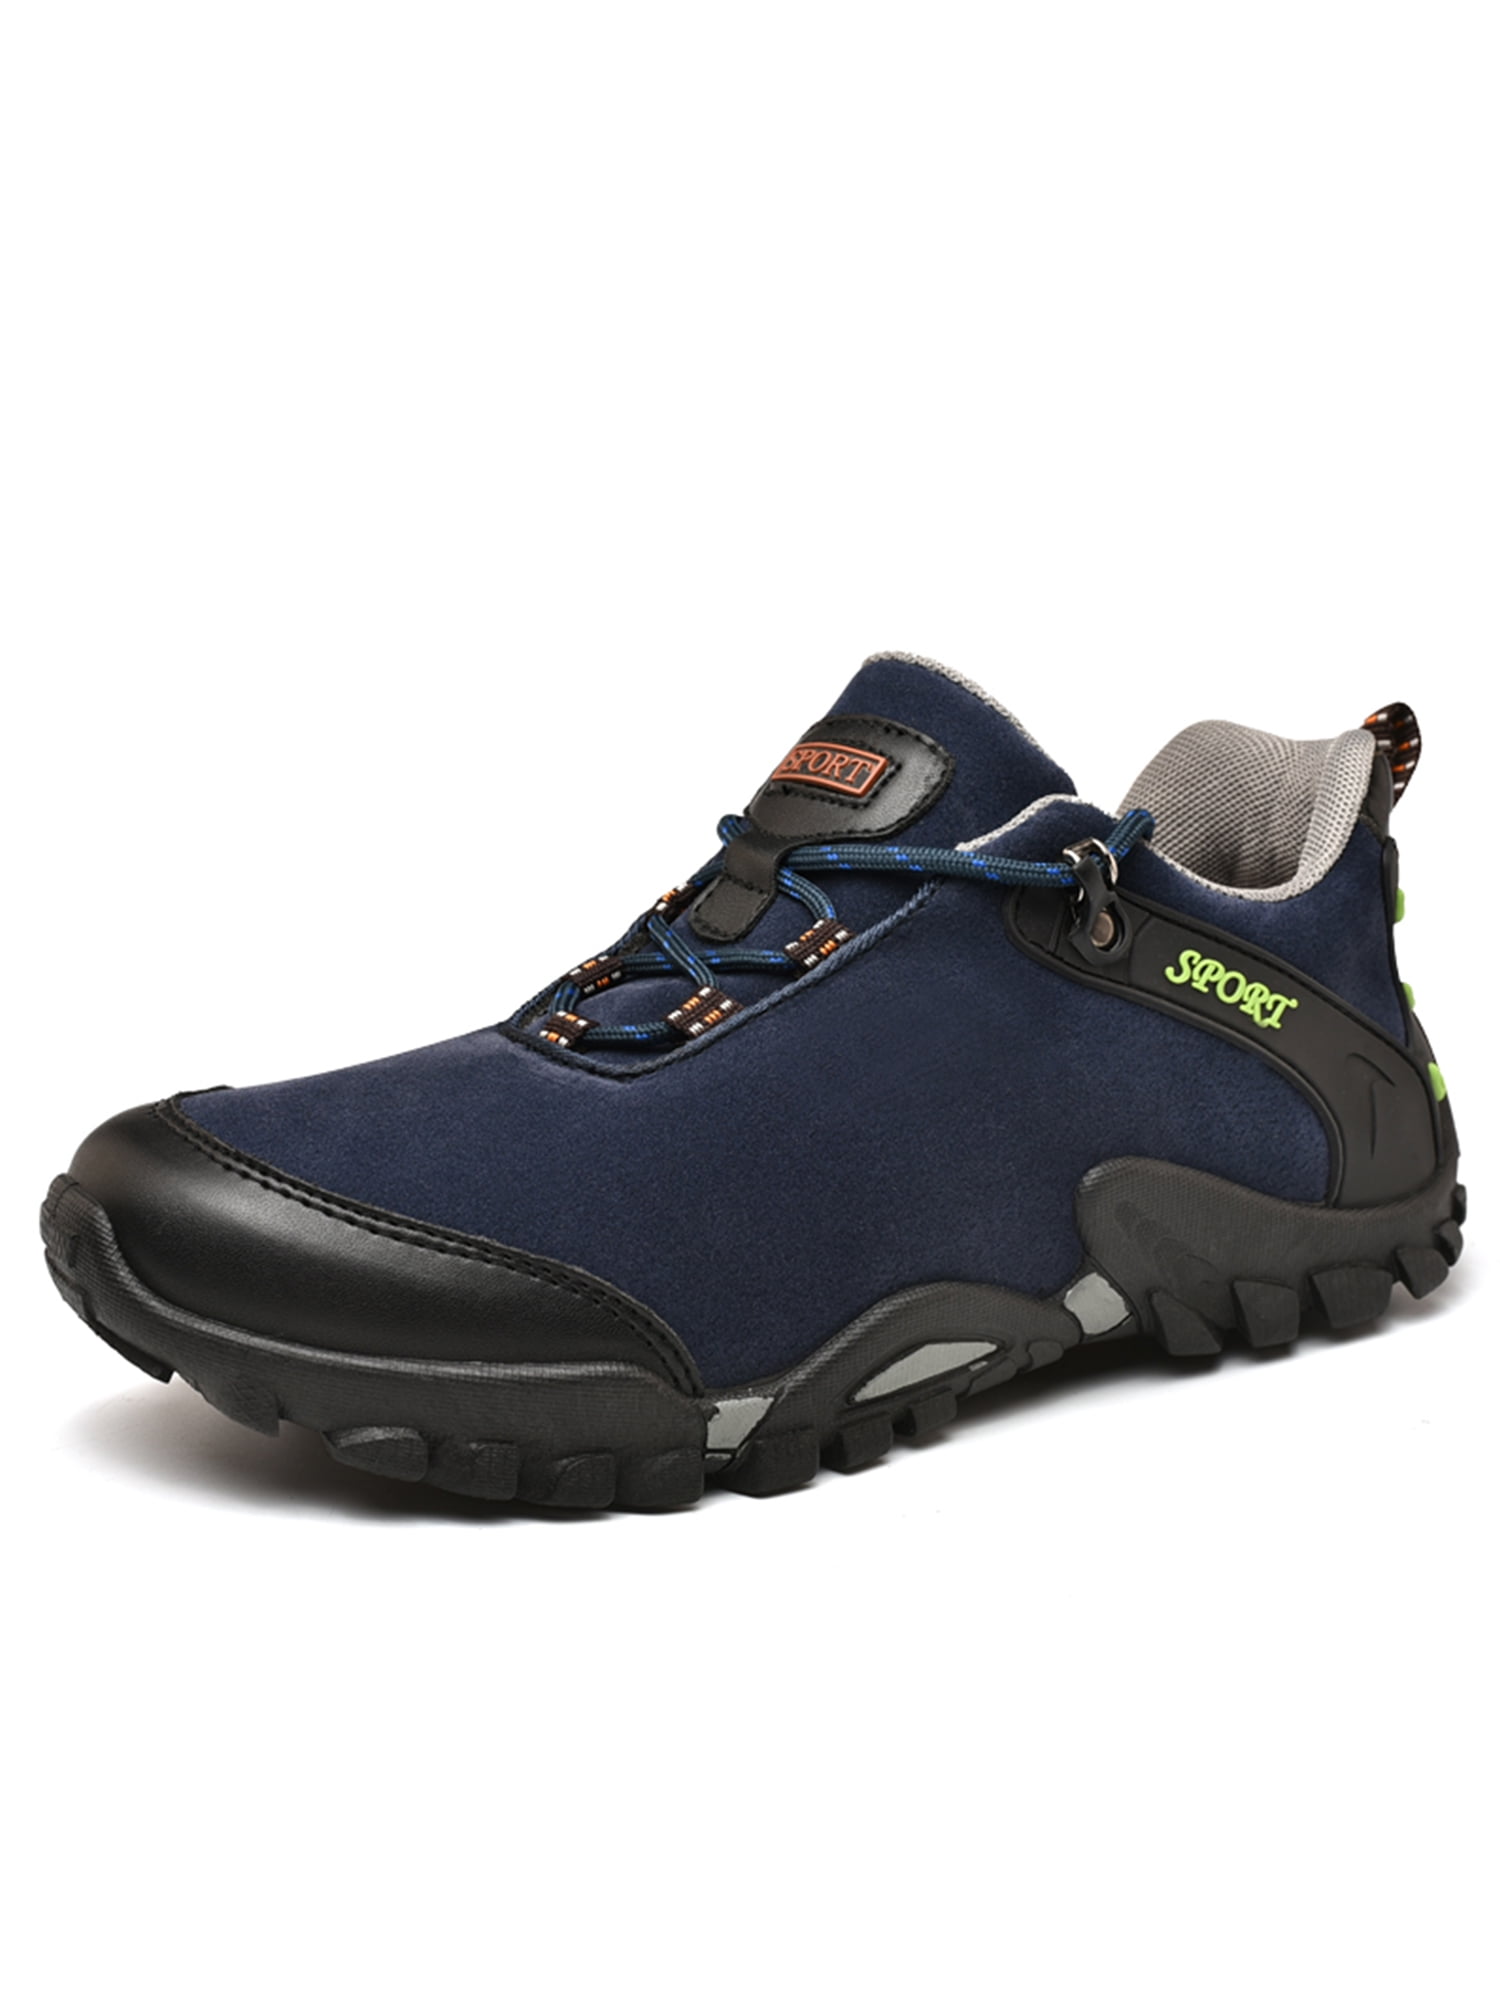 Own Shoe - Outdoor Mountain Climbing Hiking Winter Warm Leisure Shoes ...